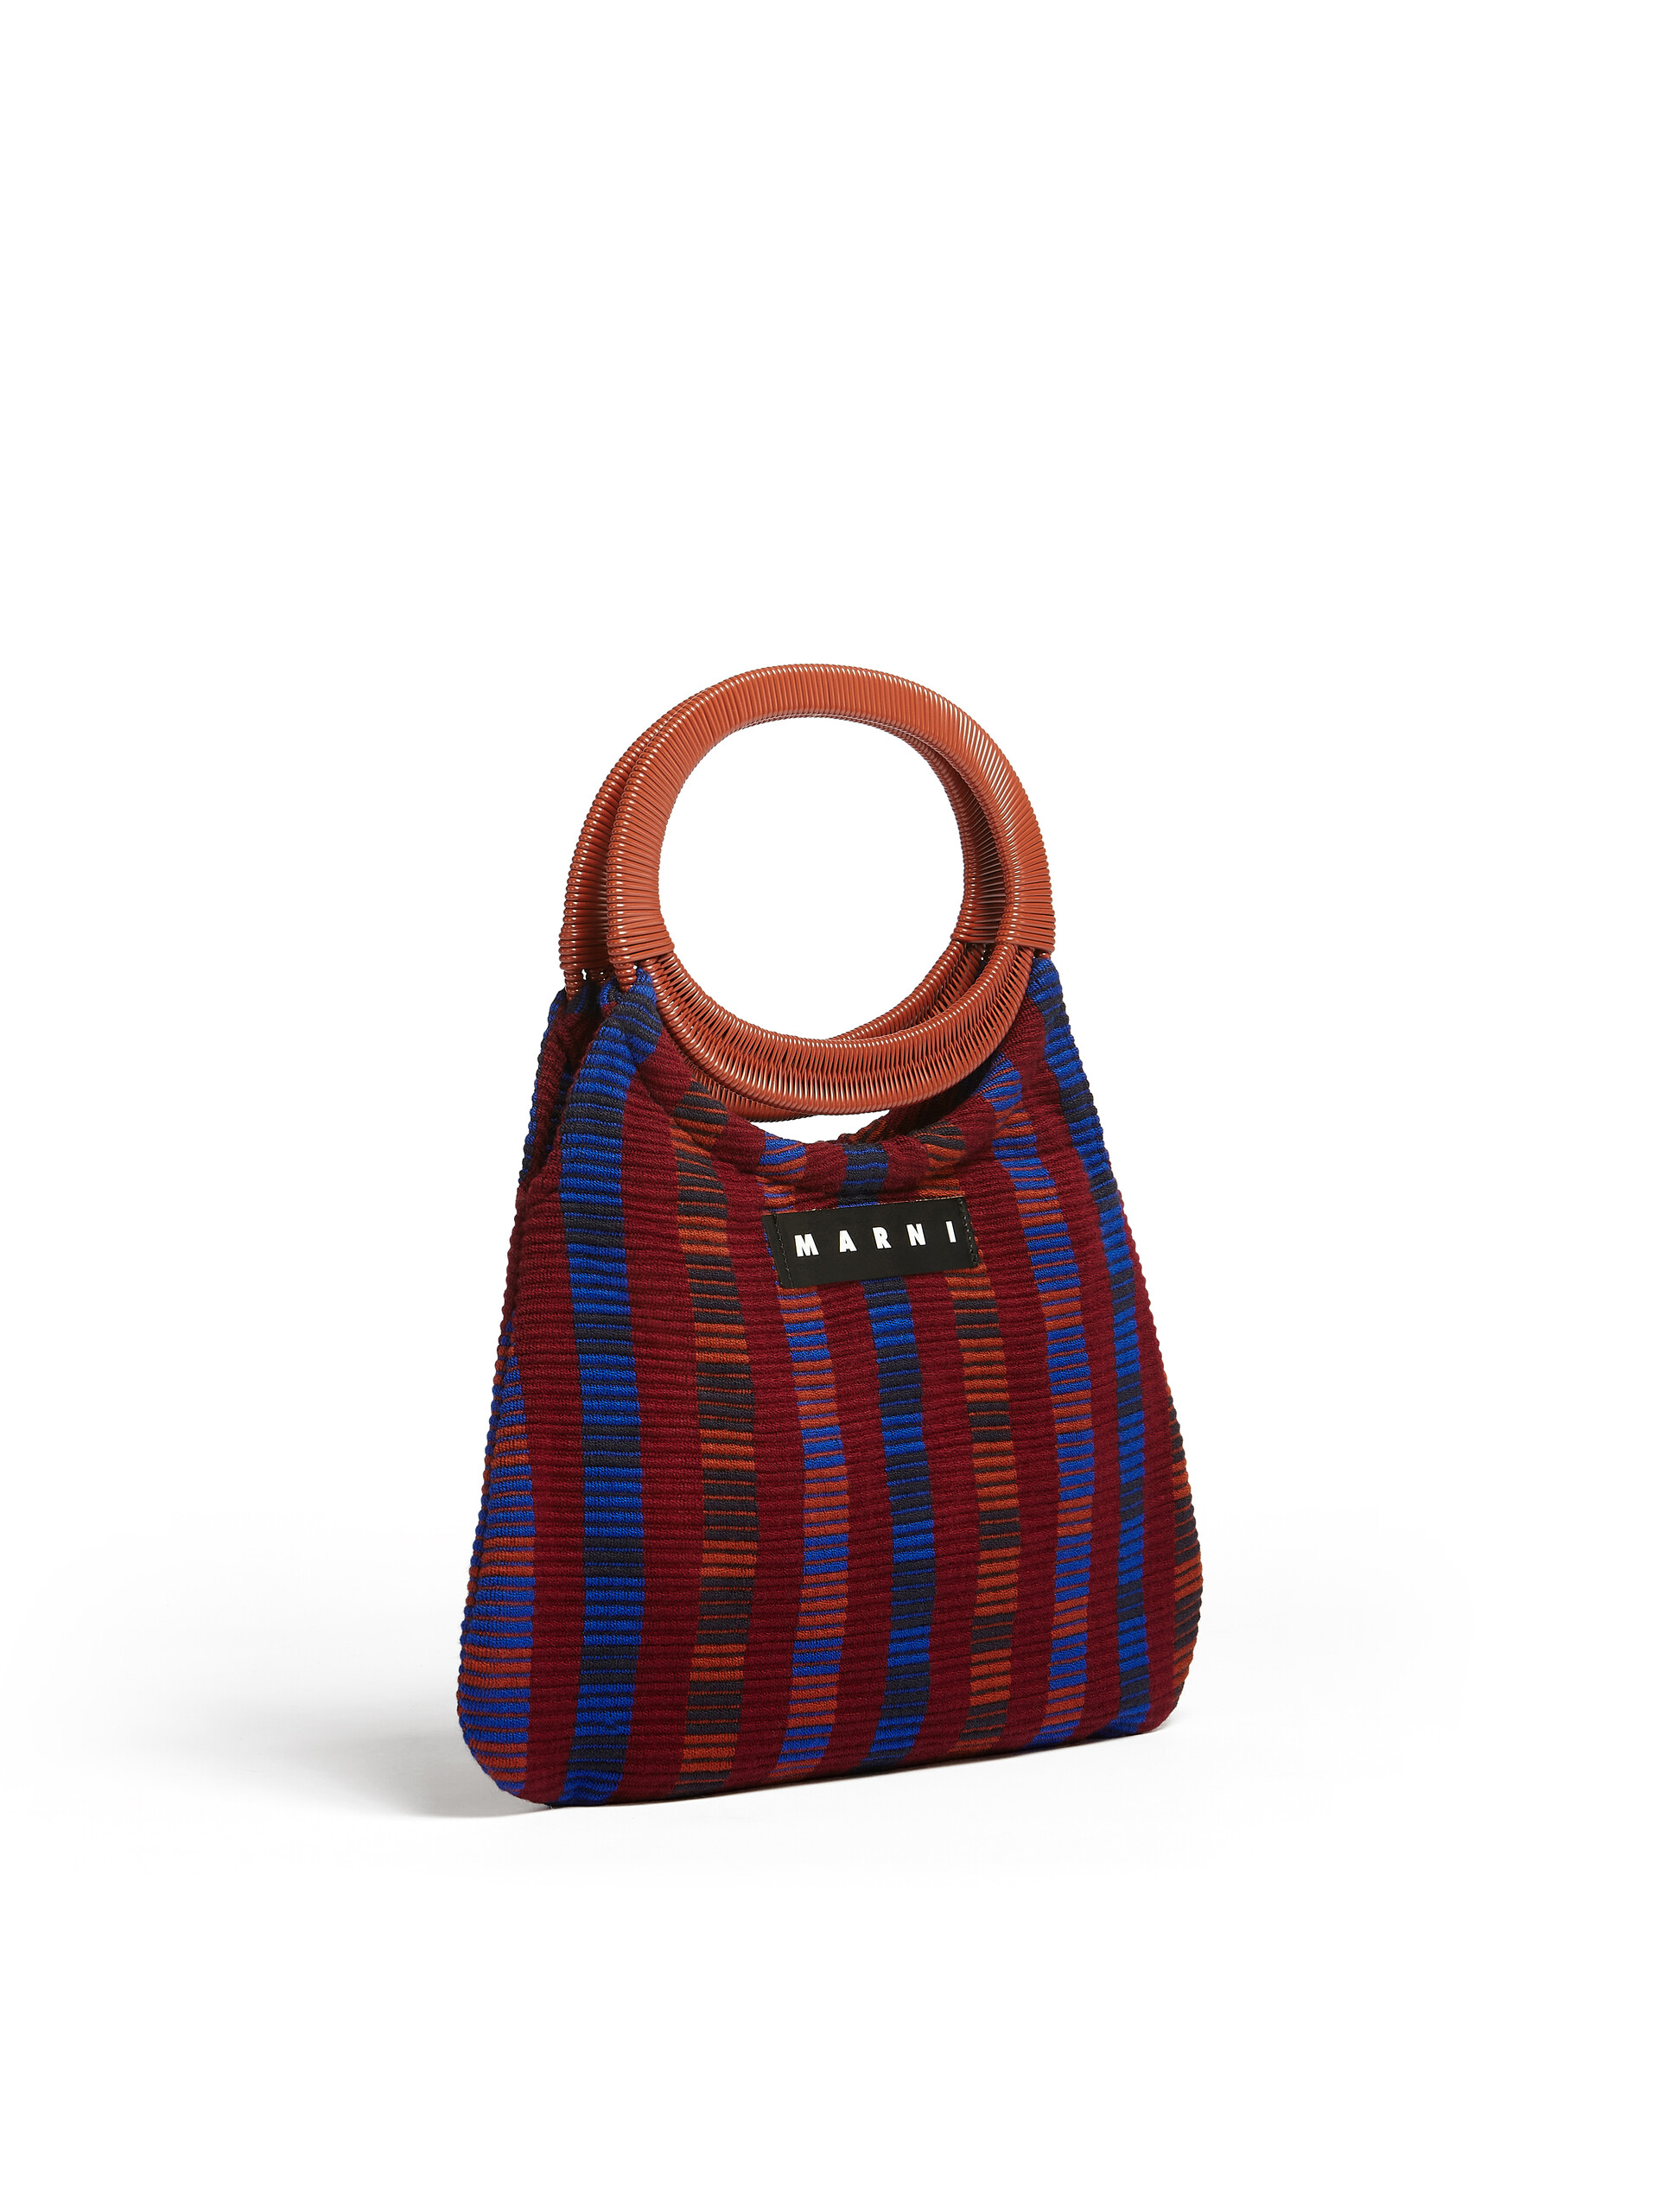 MARNI MARKET BOAT bag in multicolor red striped cotton - Furniture - Image 2